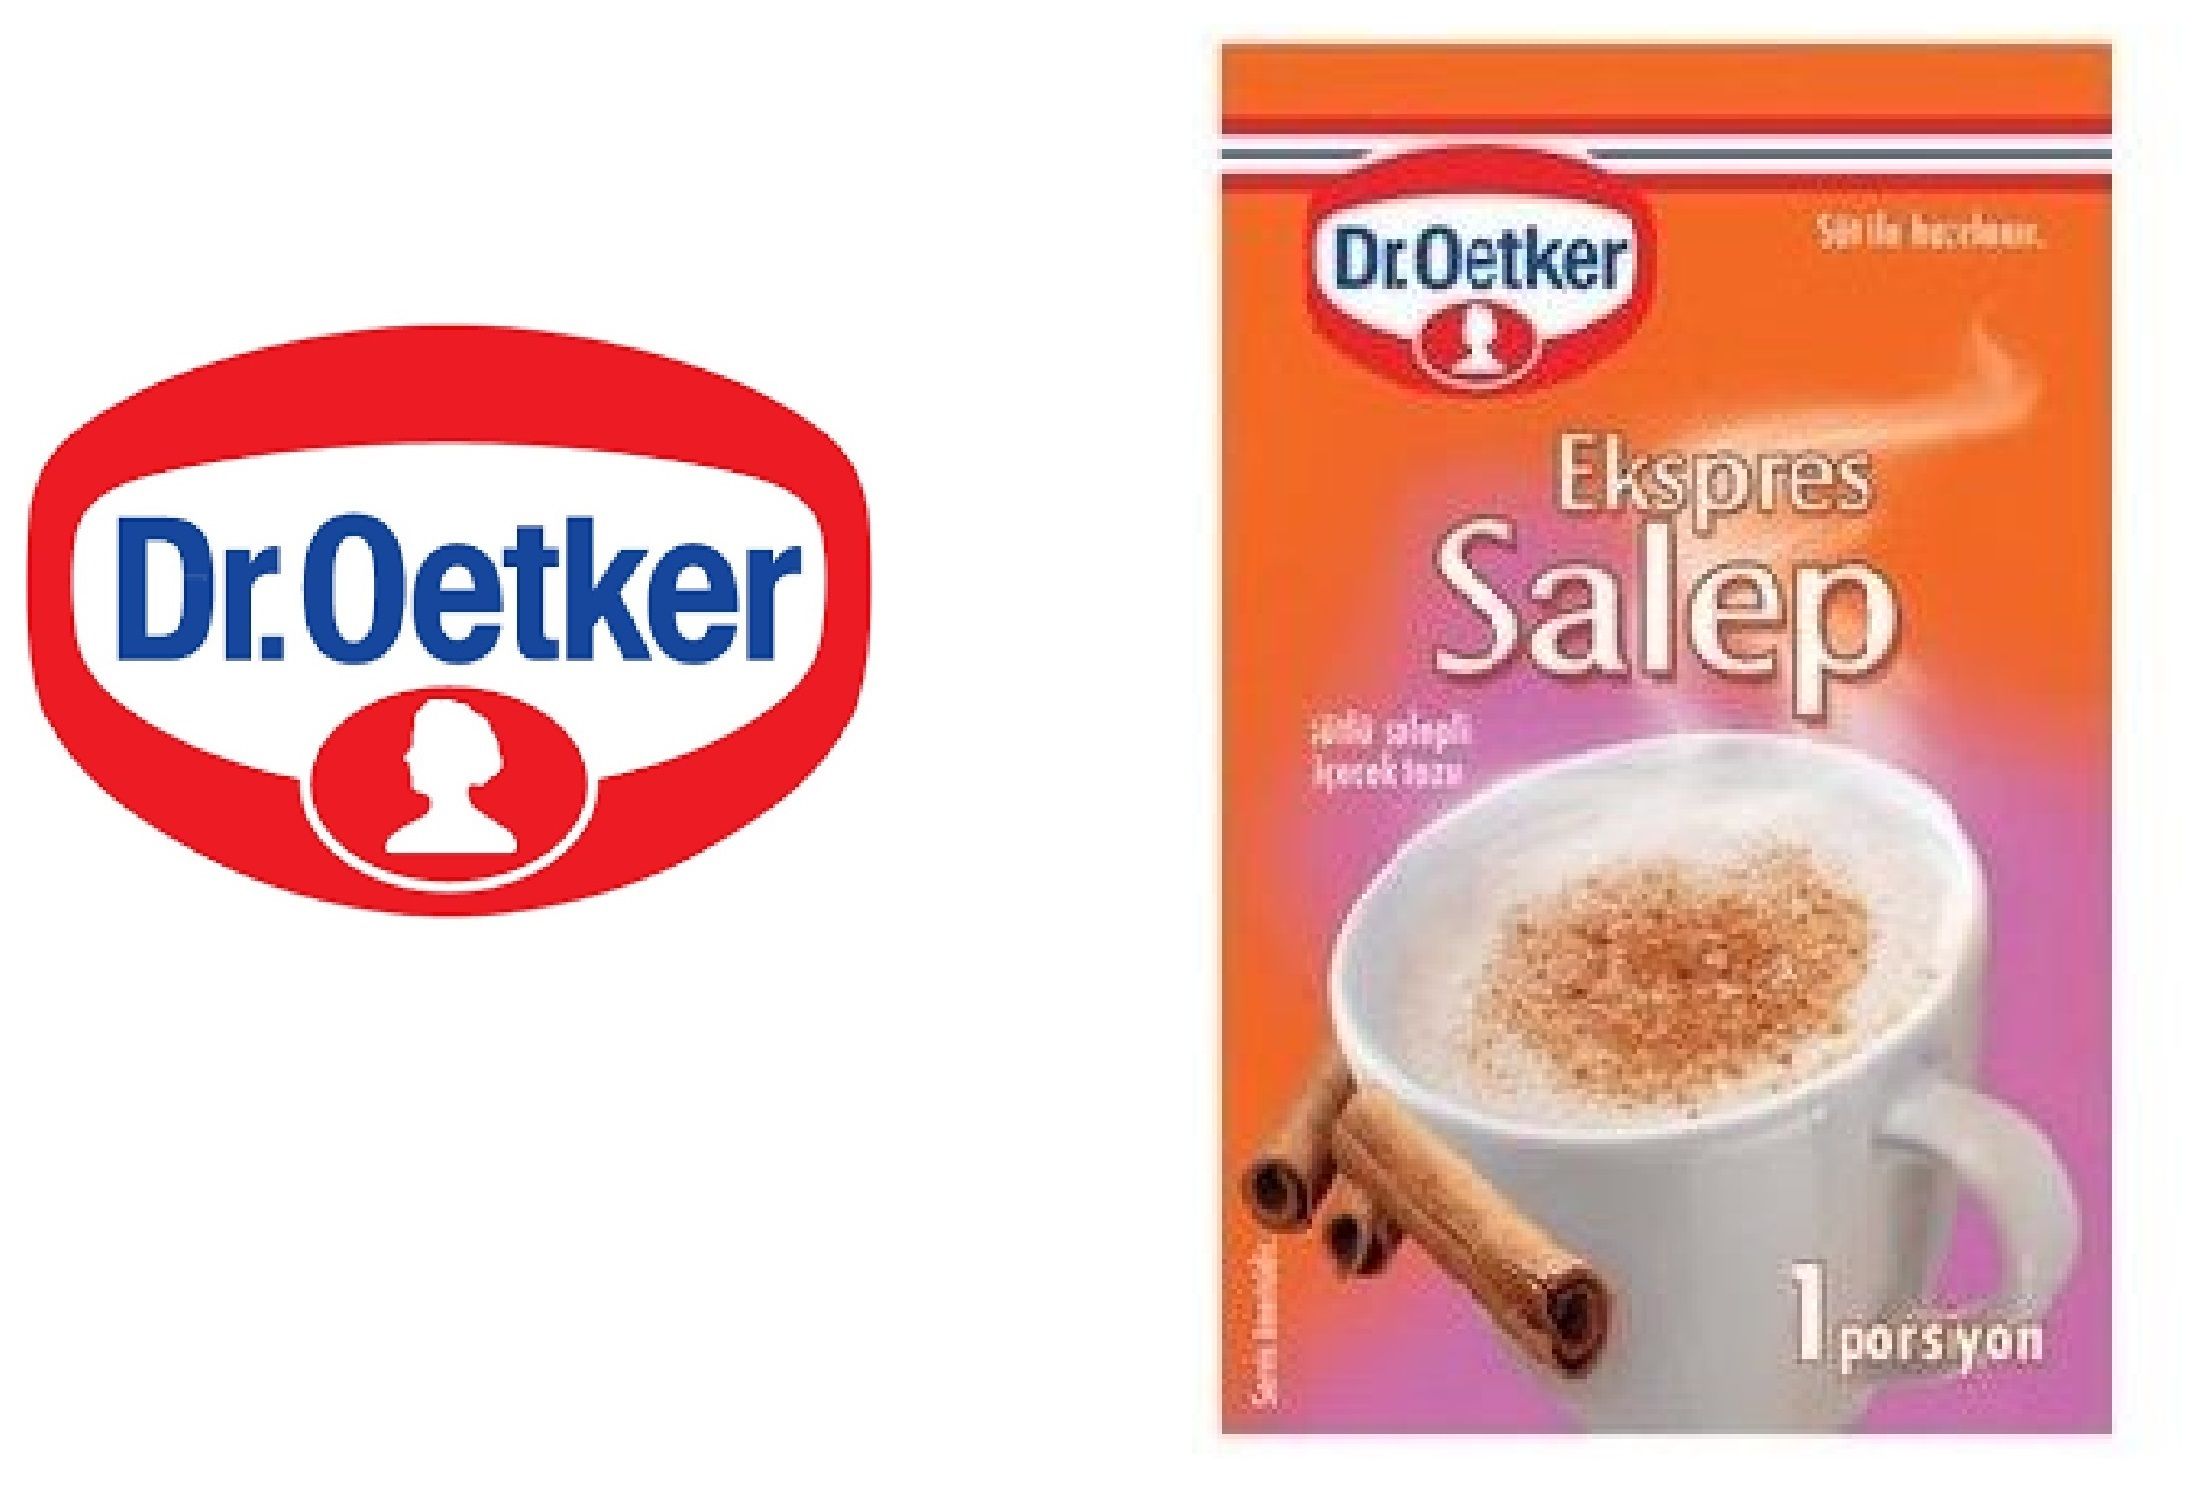 DR.OETKER EKSPRES Salep